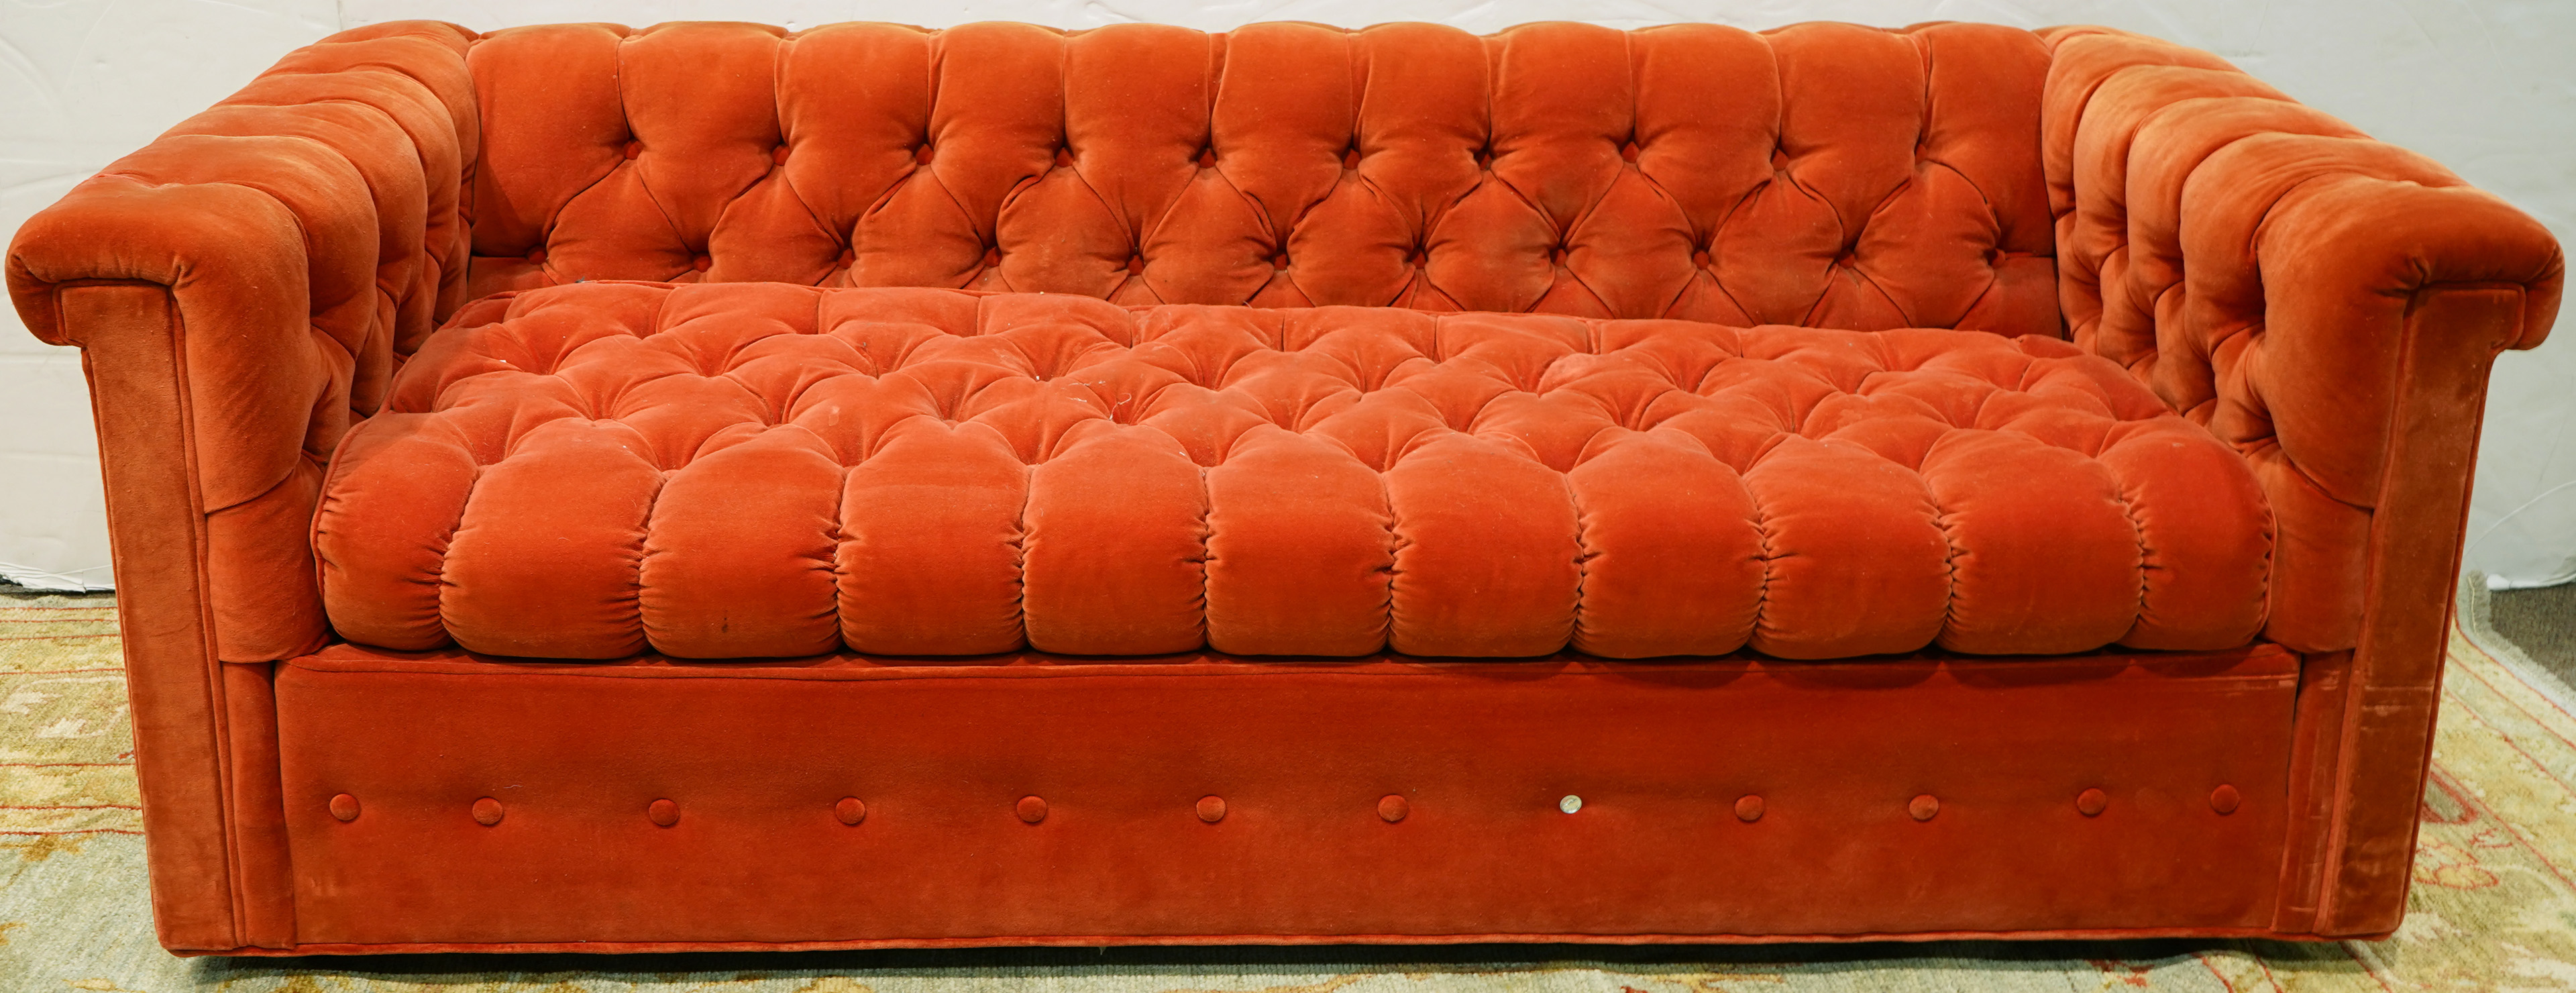 A Pair of John Stuart orange velvet upholstered Chesterfield style sofas - Image 2 of 2